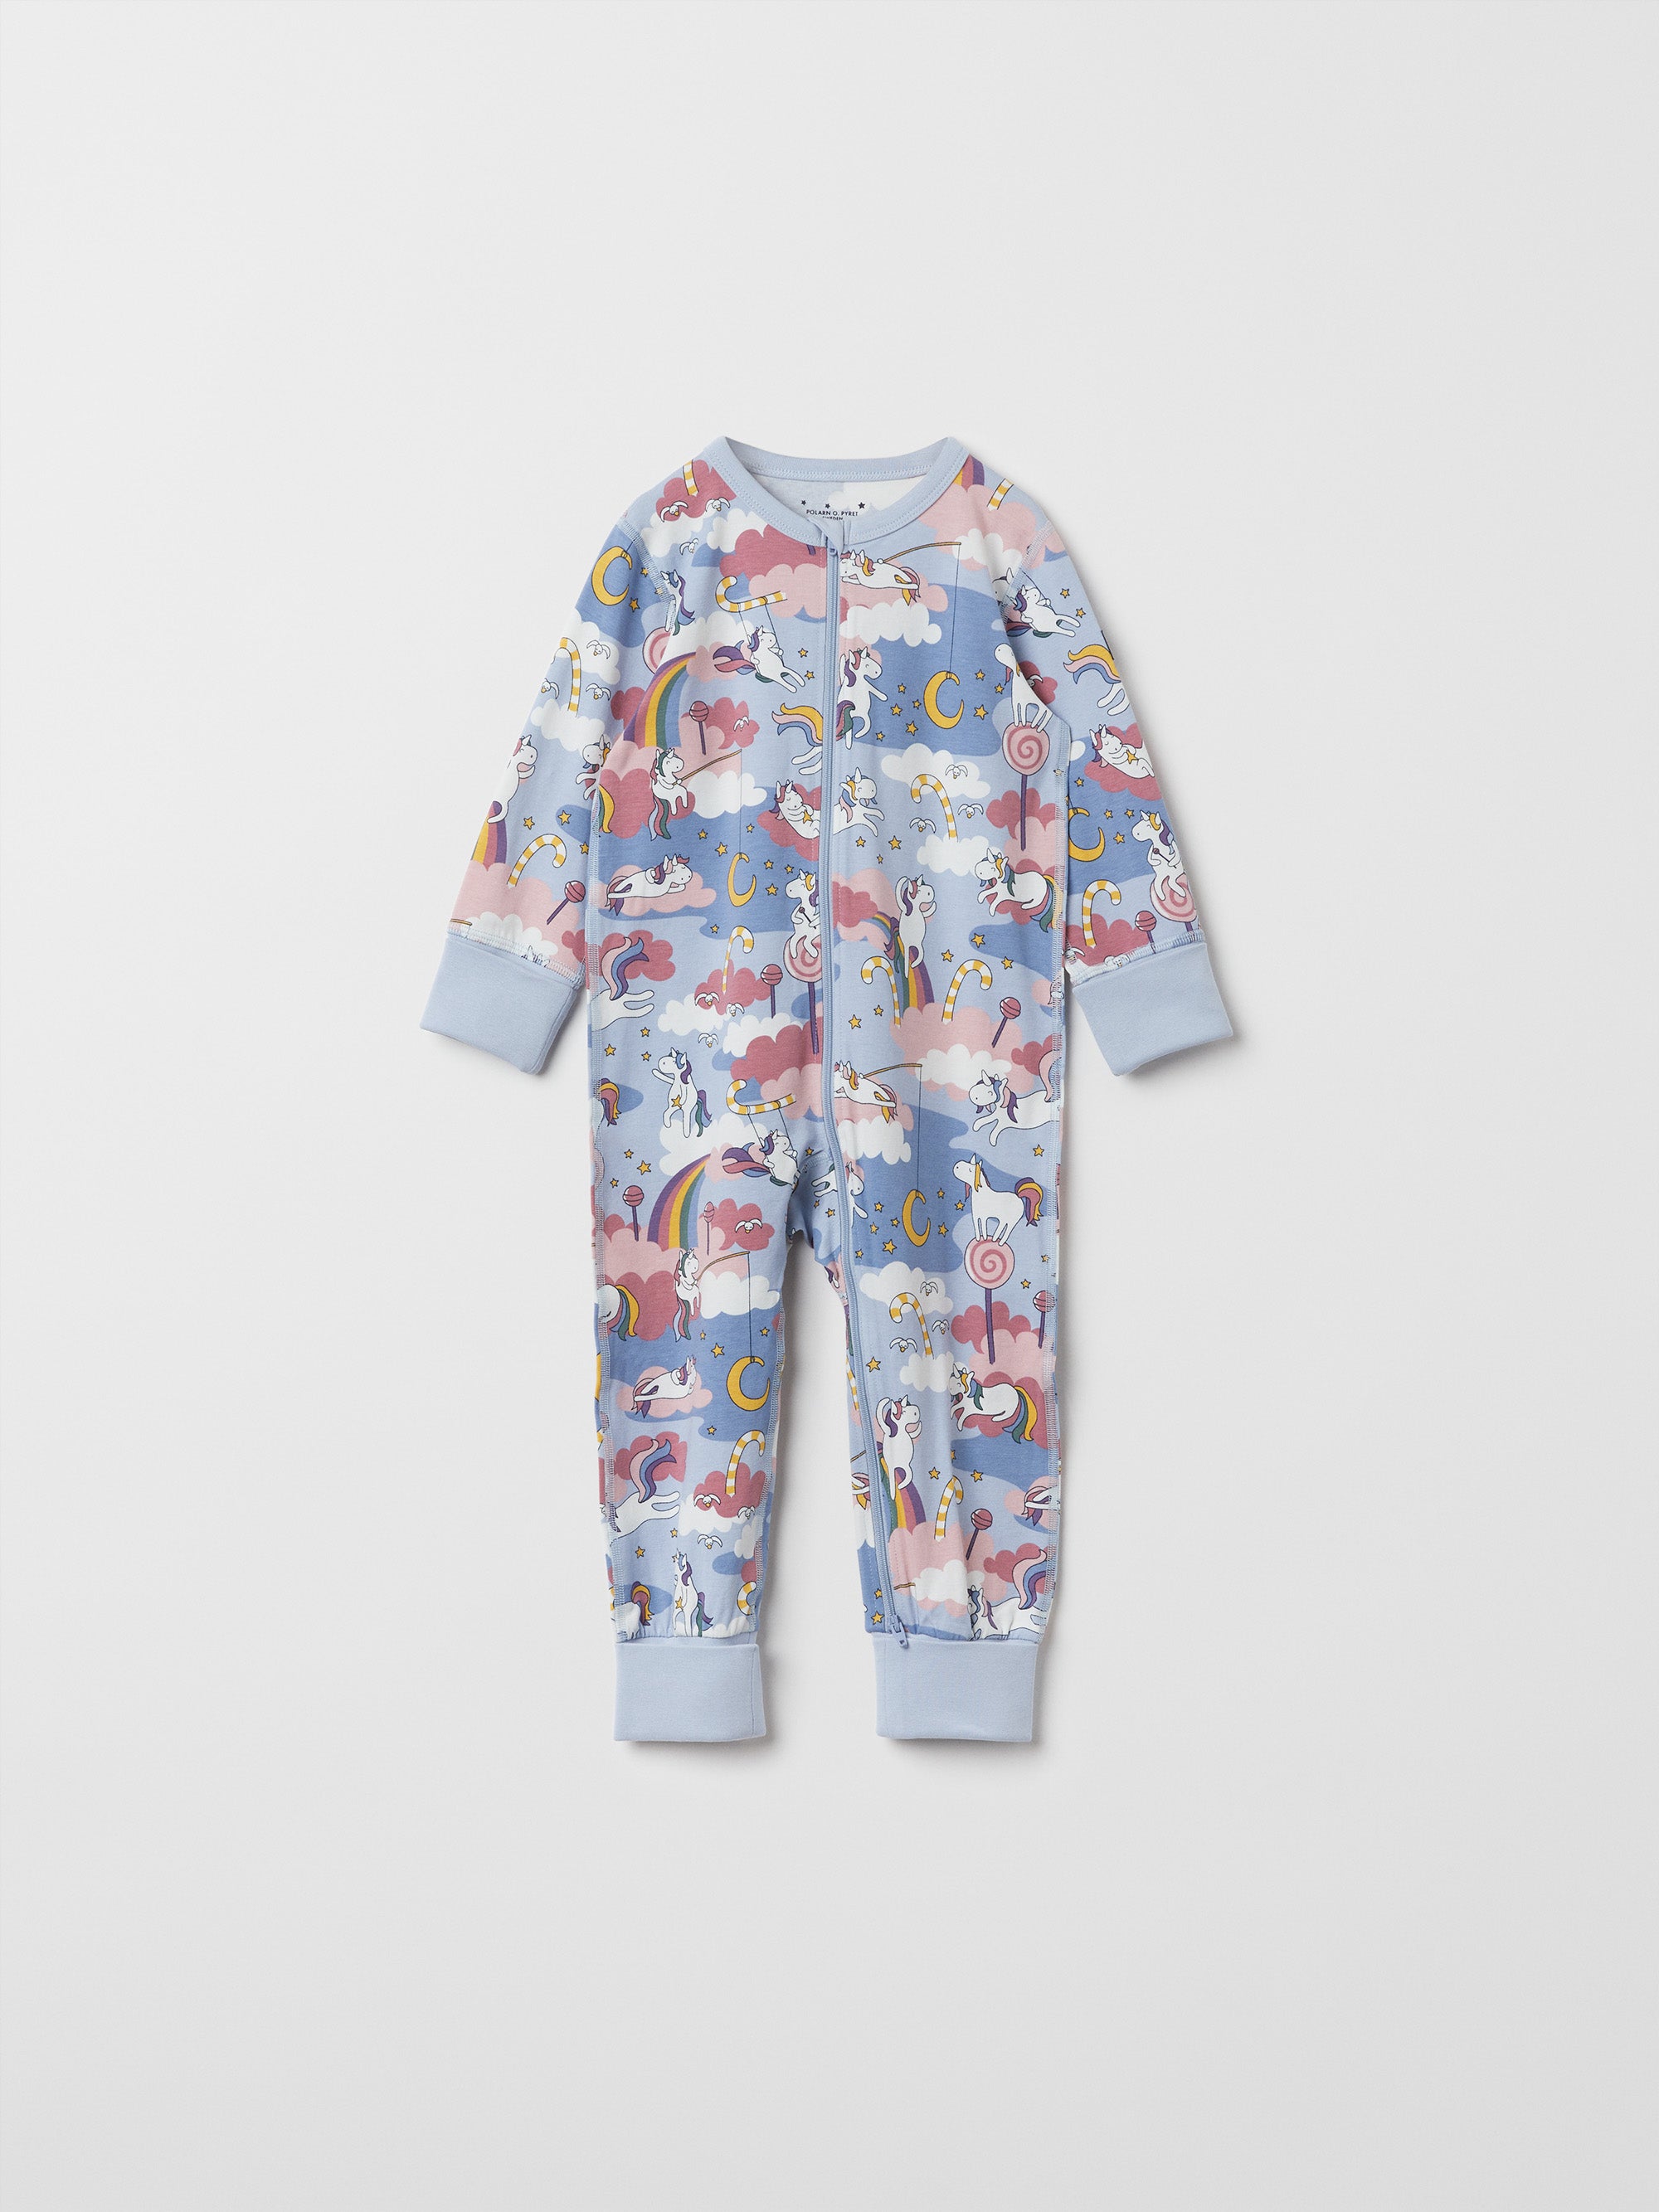 Unicorn Print Baby Sleepsuit